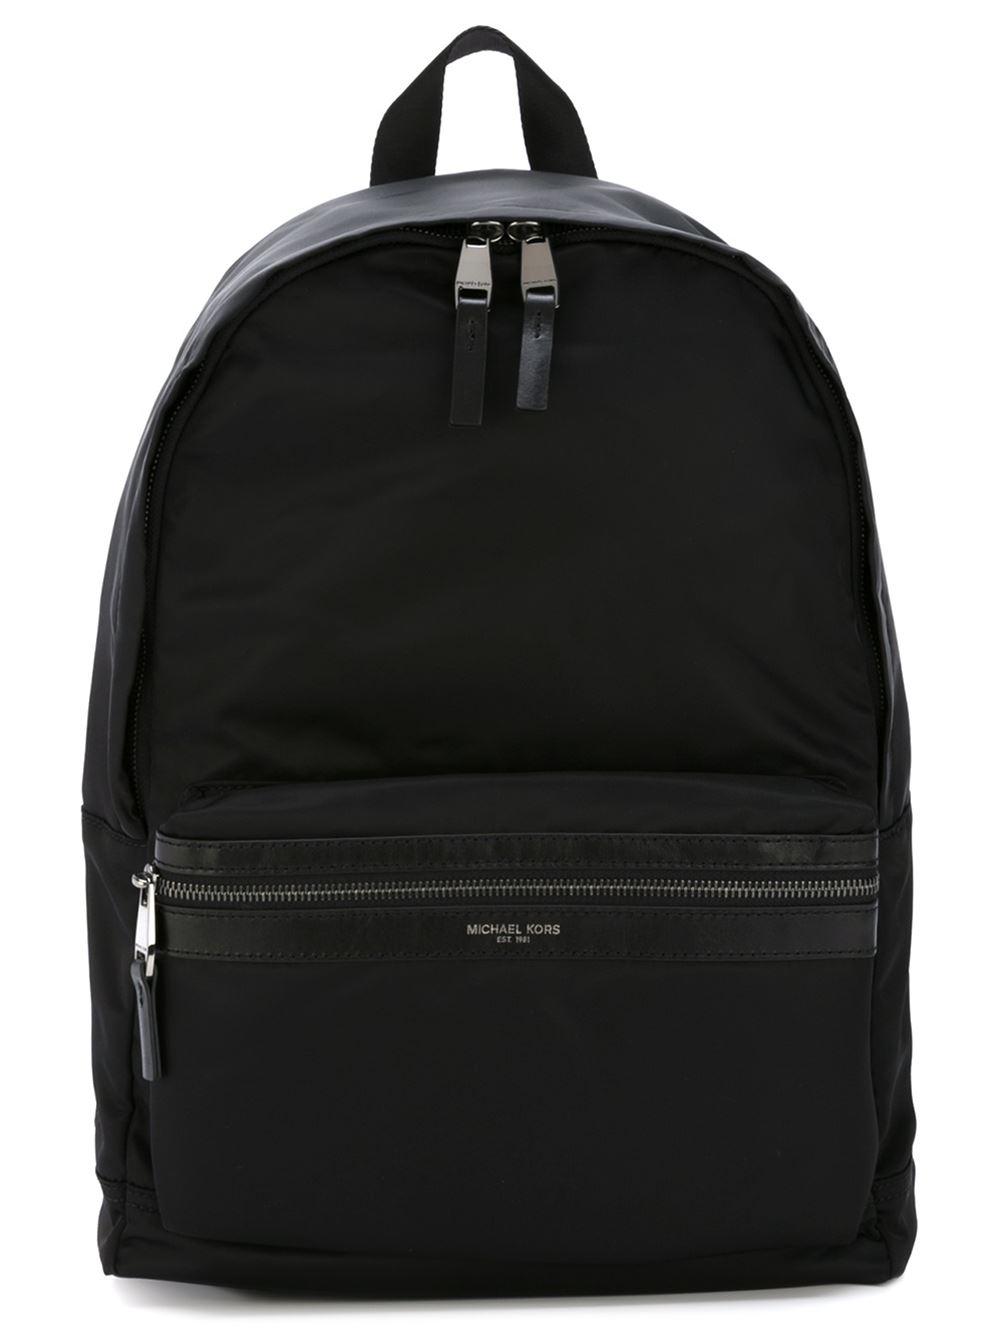 Michael Kors - &#39;kent&#39; Backpack - Men - Leather/nylon - One Size in Black for Men - Lyst